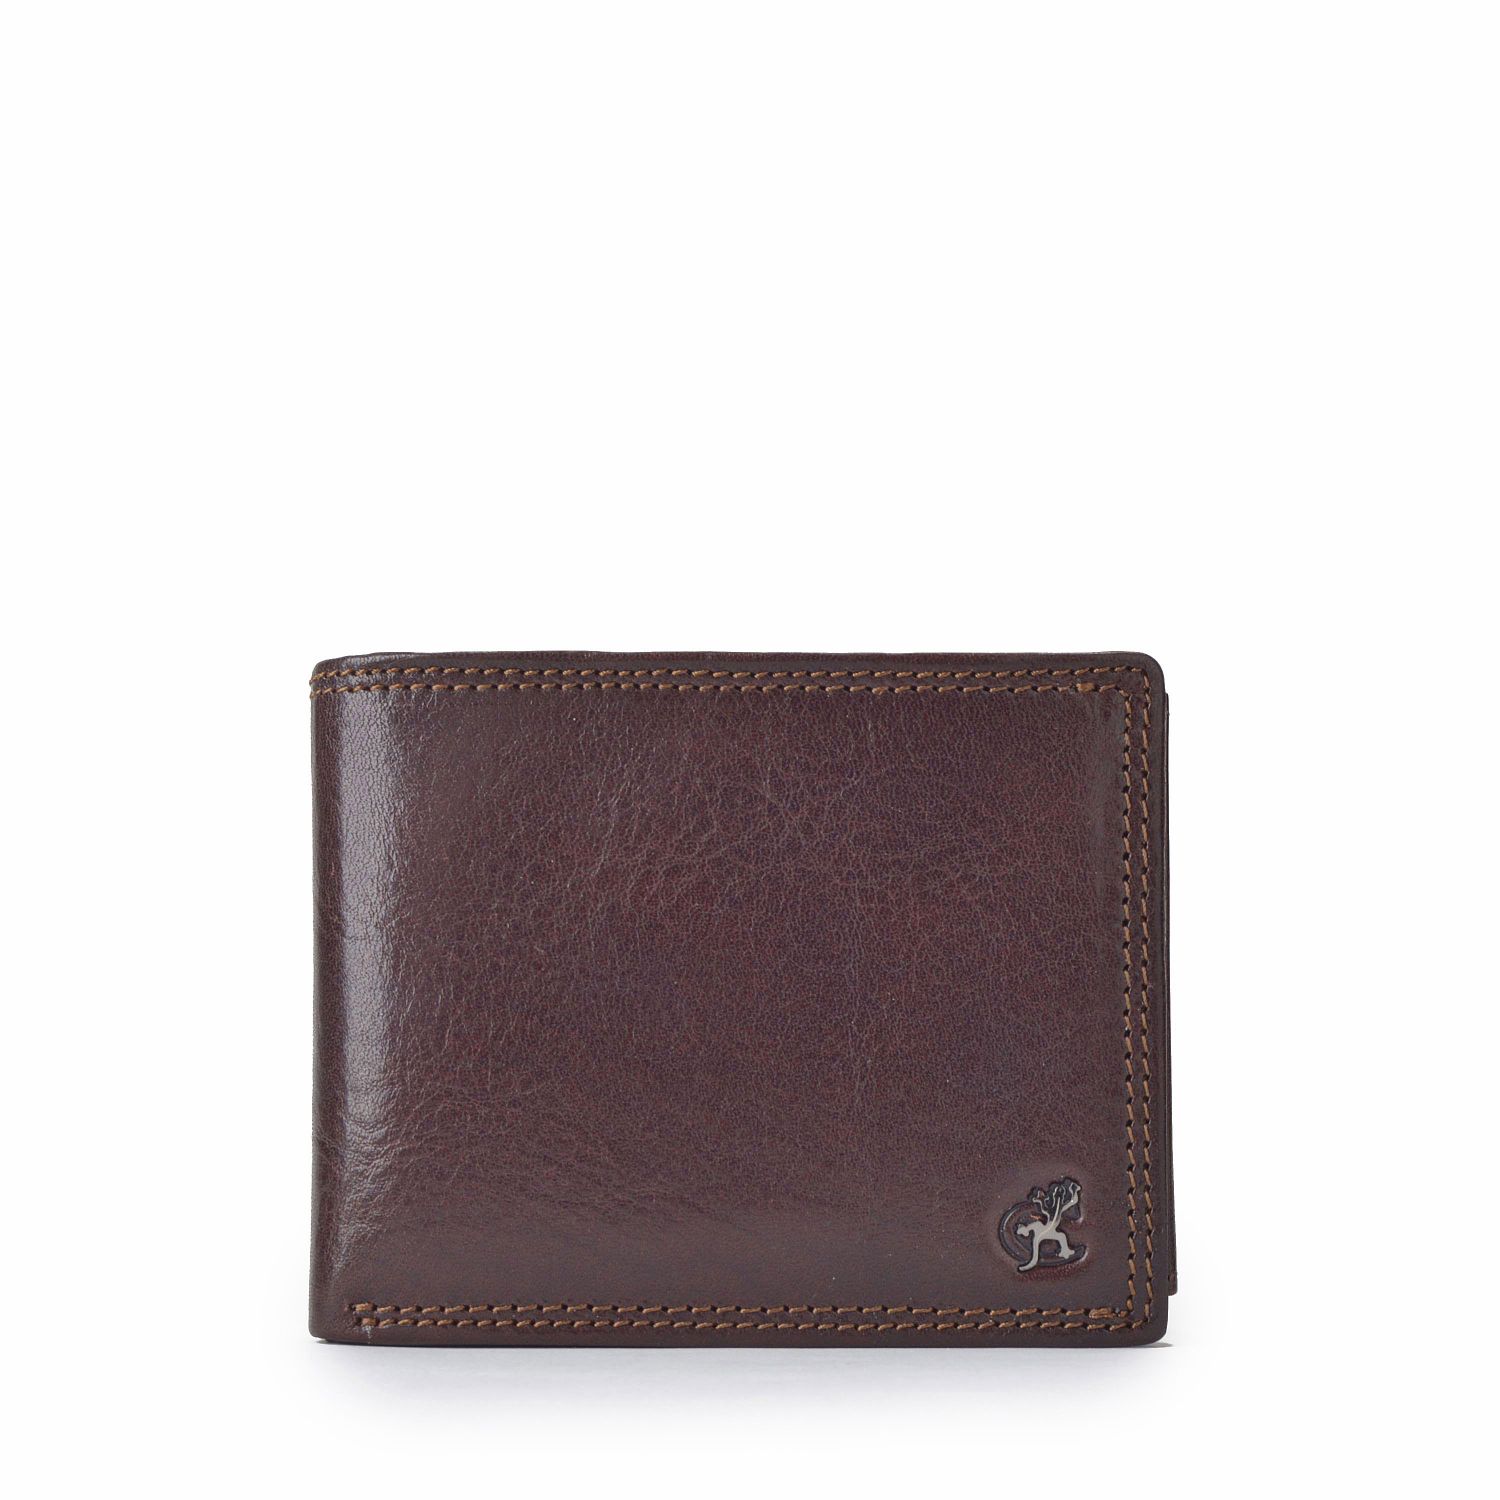 Hnědá kožená pánská peněženka Cosset Komodo 4488